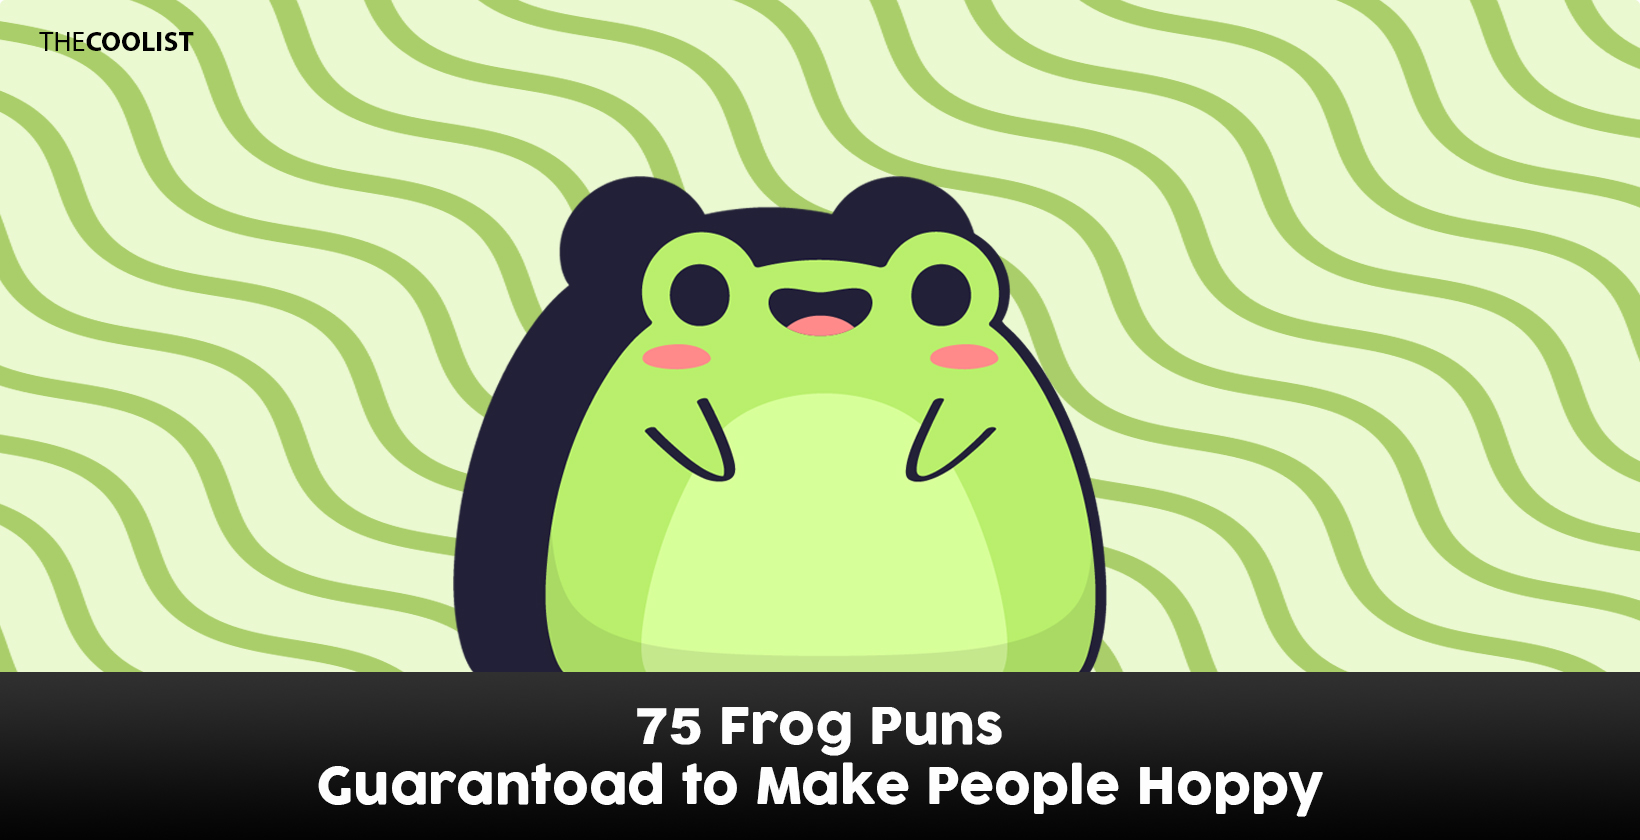 Frog puns to make people laugh